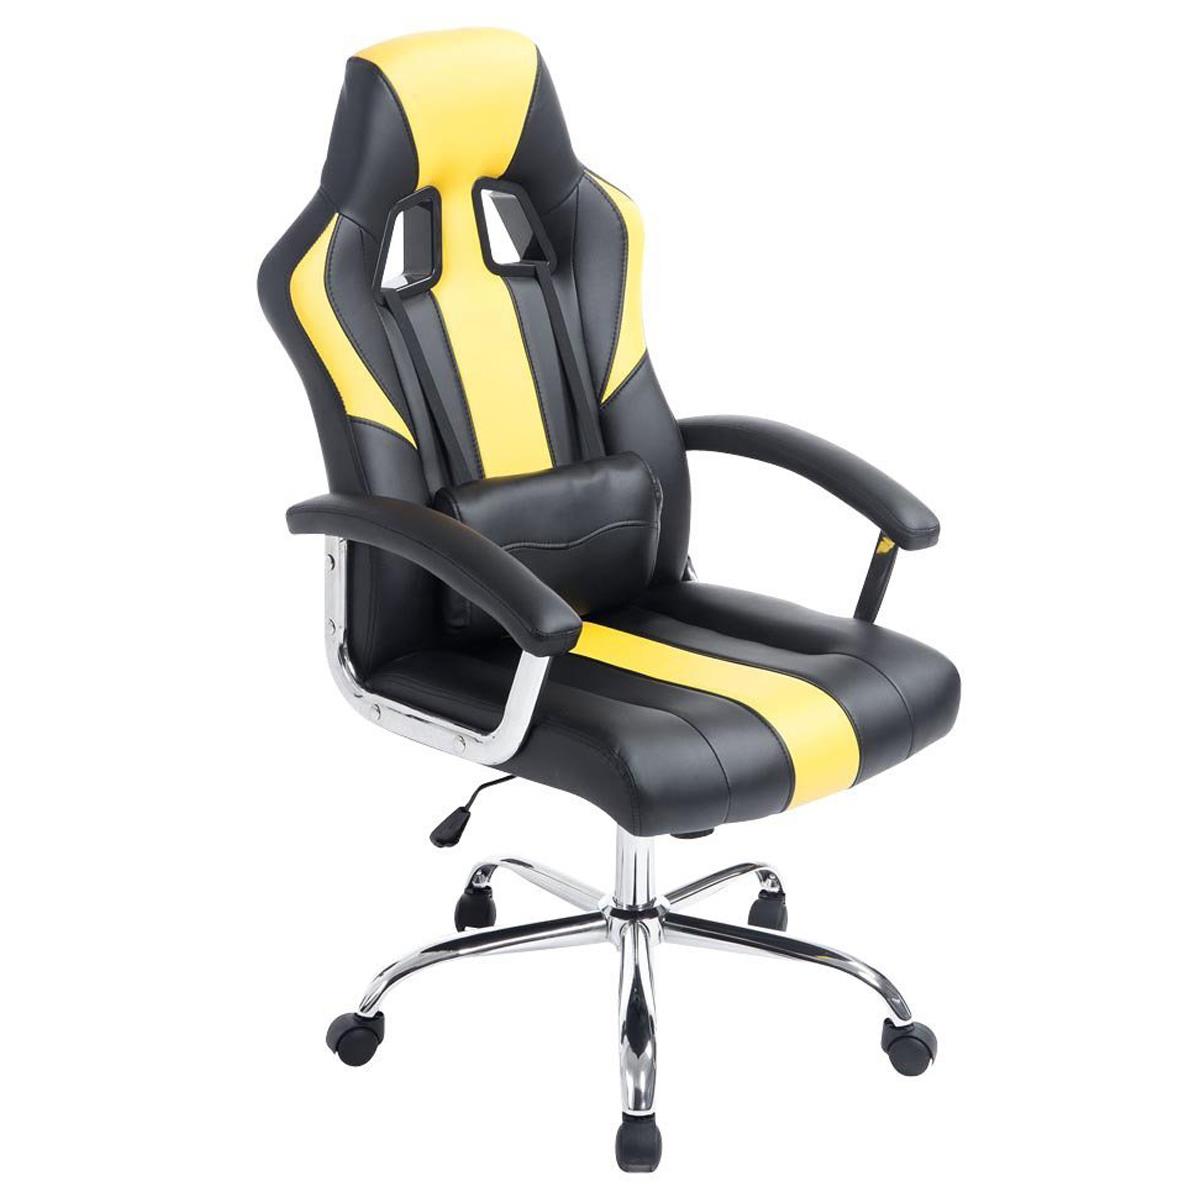 Gaming-Stuhl INDOS, sportliches Design, hoher Komfort, Metallfußkreuz, Lederbezug, Farbe Schwarz / Gelb